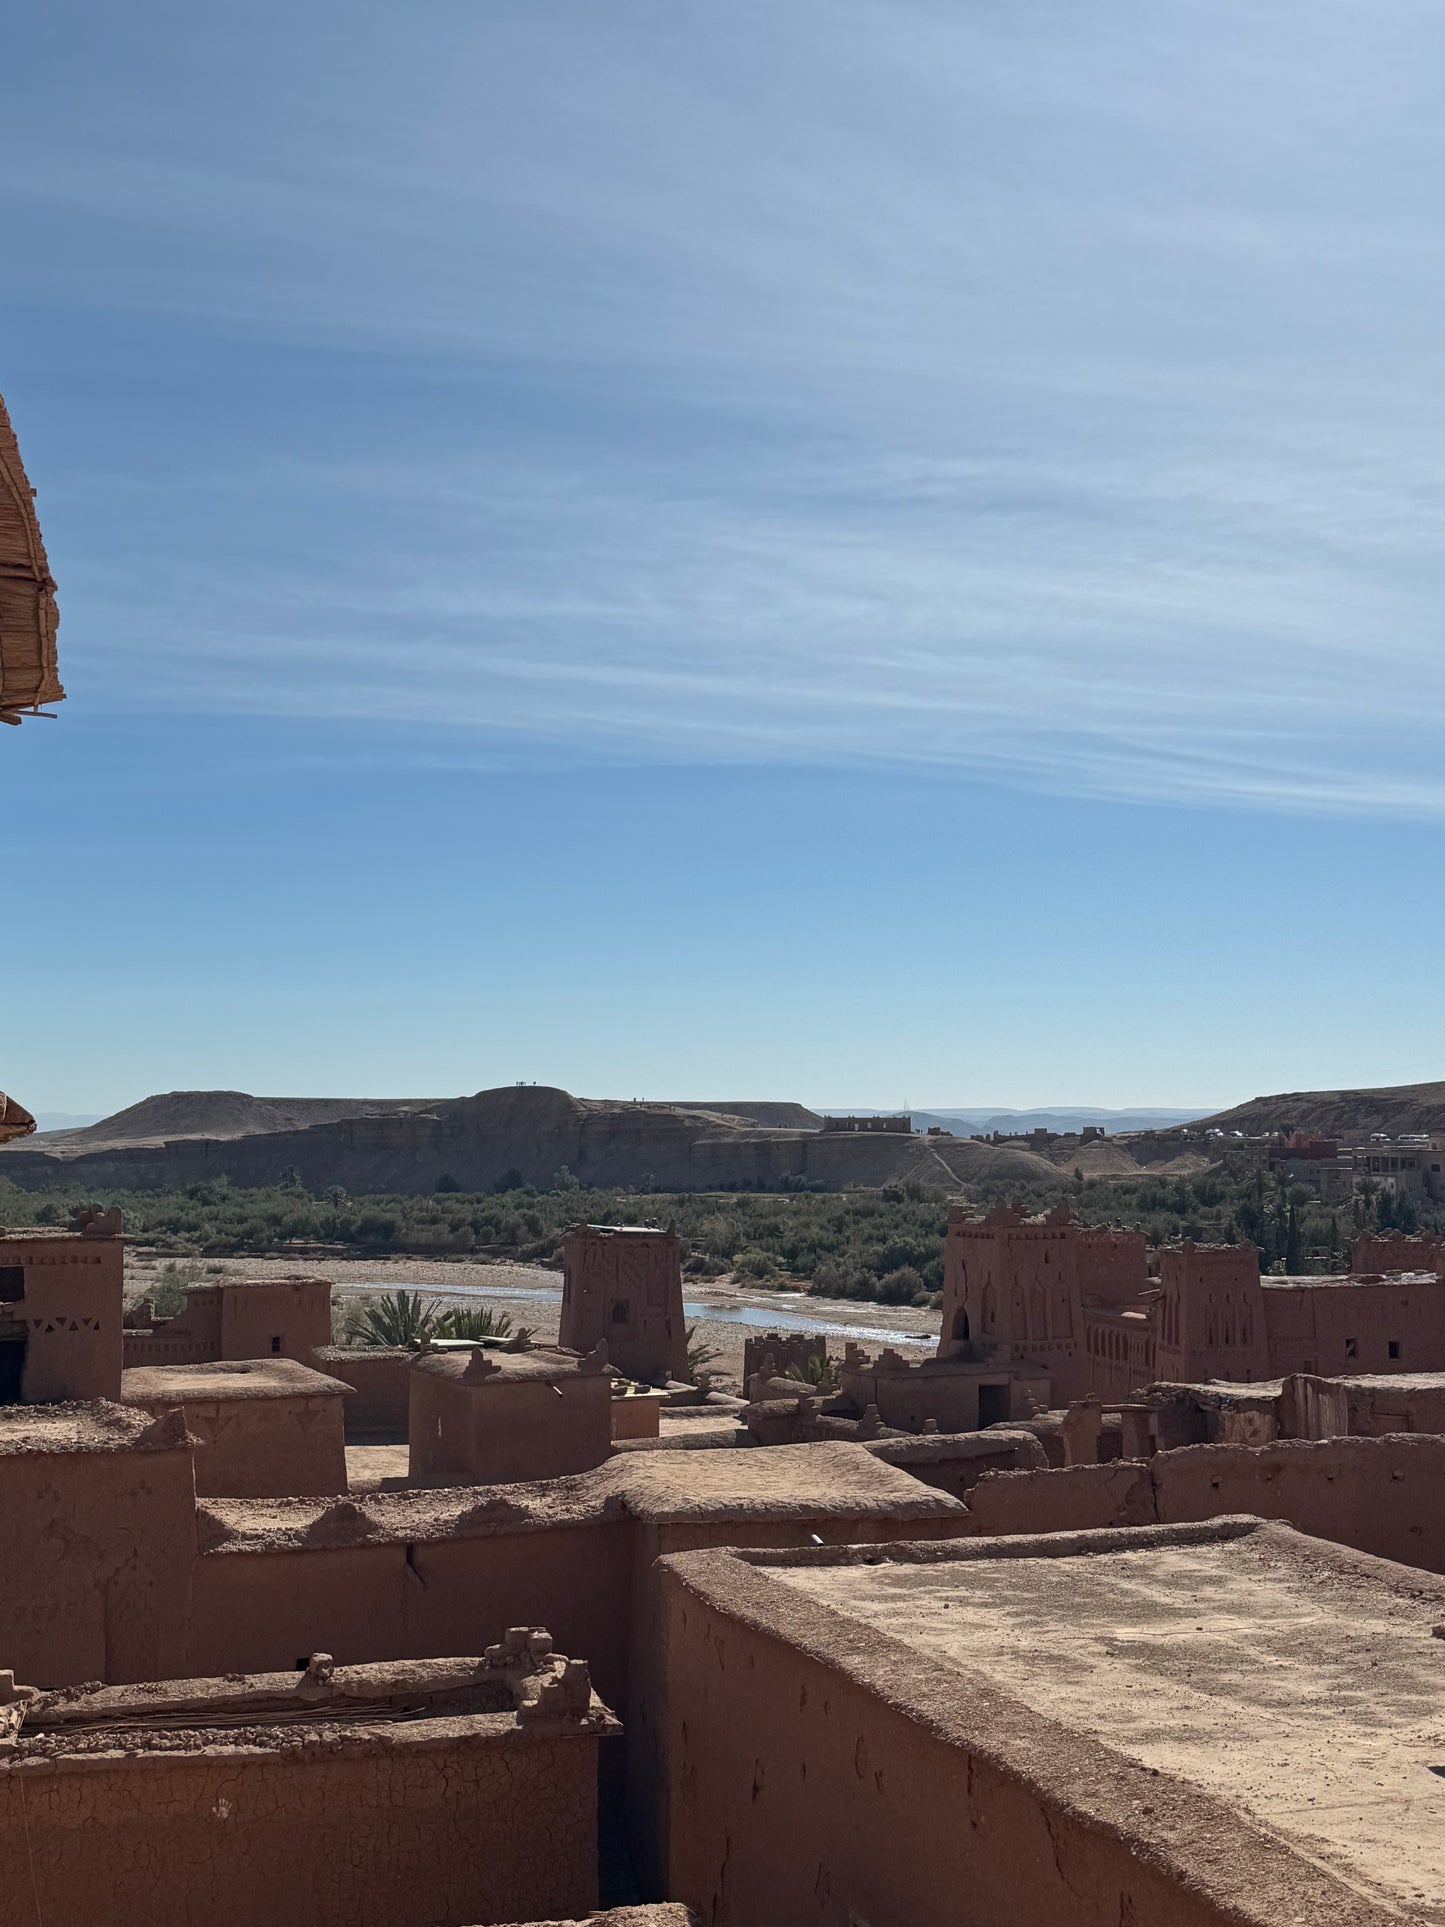 5 días Marrakech y desierto de Merzouga - Desde 299 euros (Deluxe)